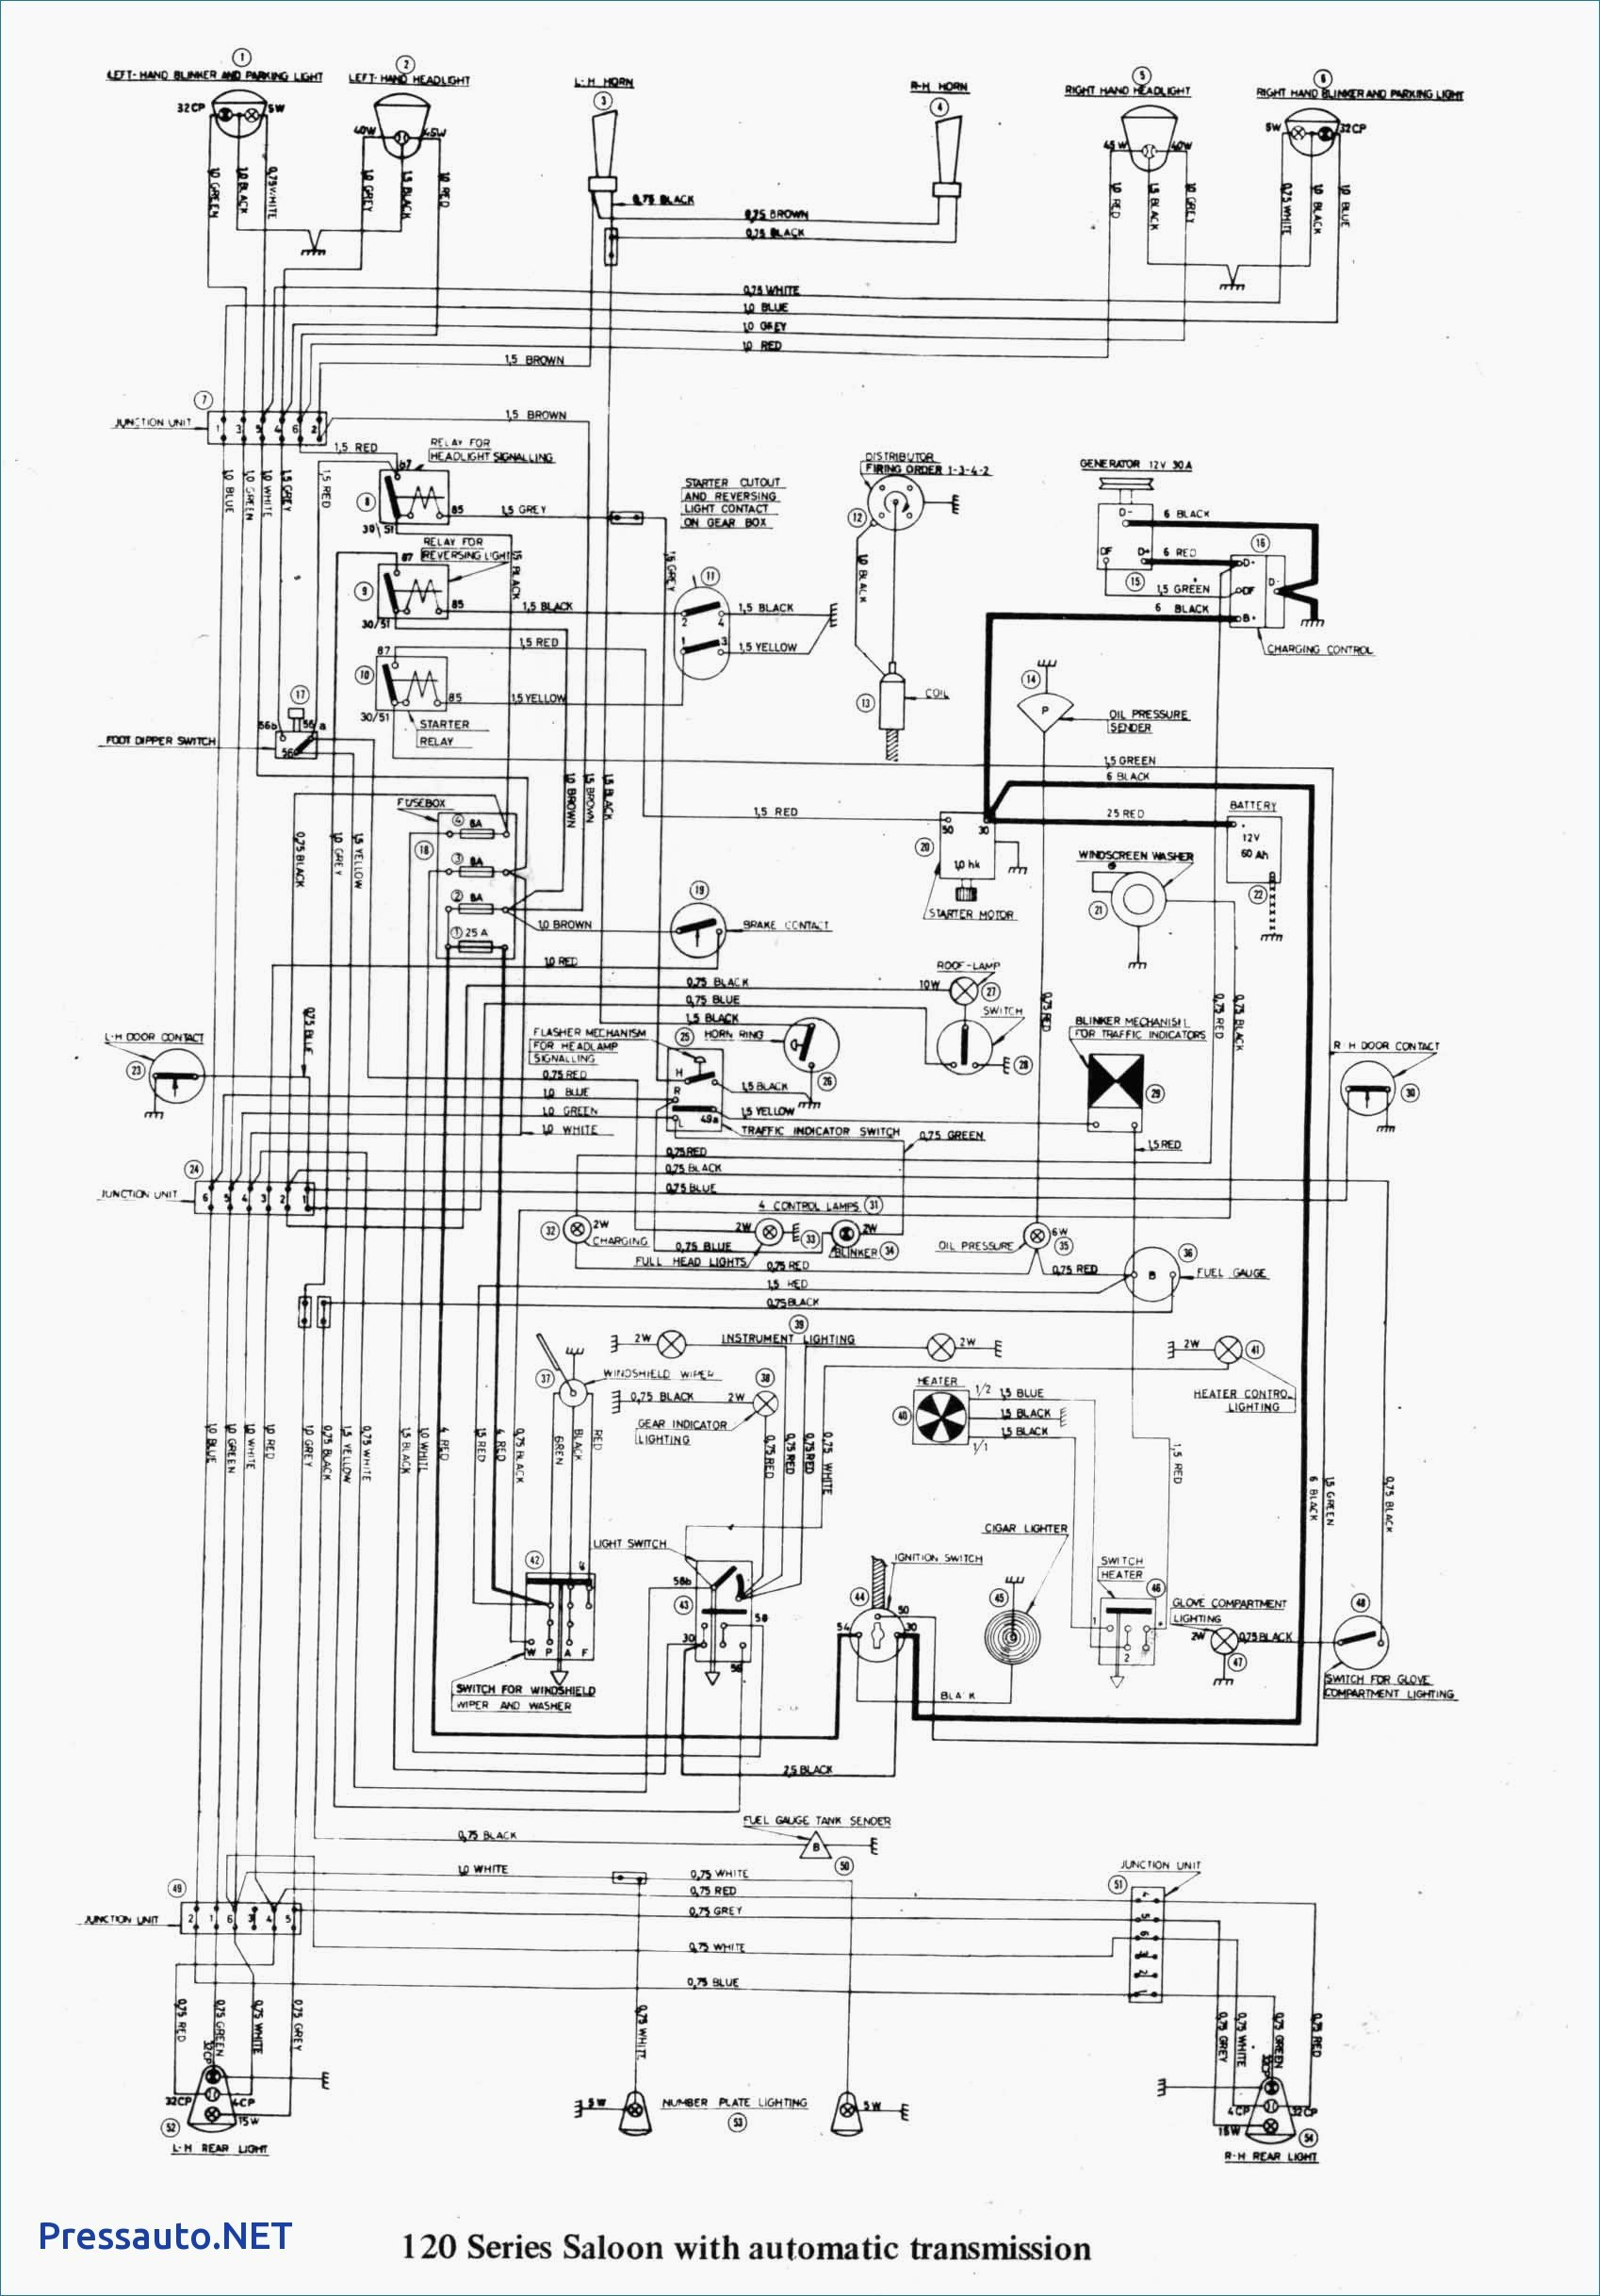 47 International Trucks Wiring Diagram - Wiring Diagram Data Oreo - International Truck Wiring Diagram Manual